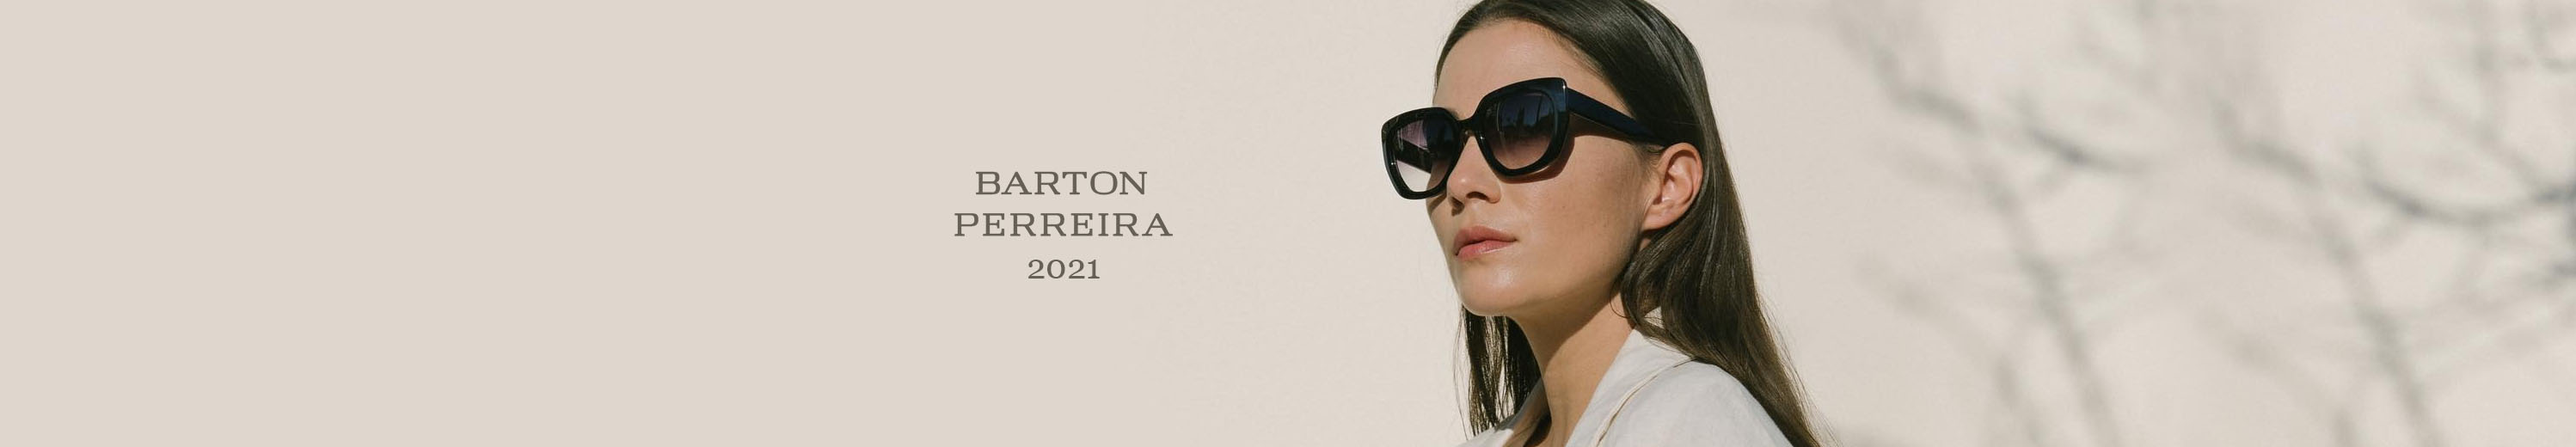 Barton Perreira 2021 Spring / Summer Eyewear Collection